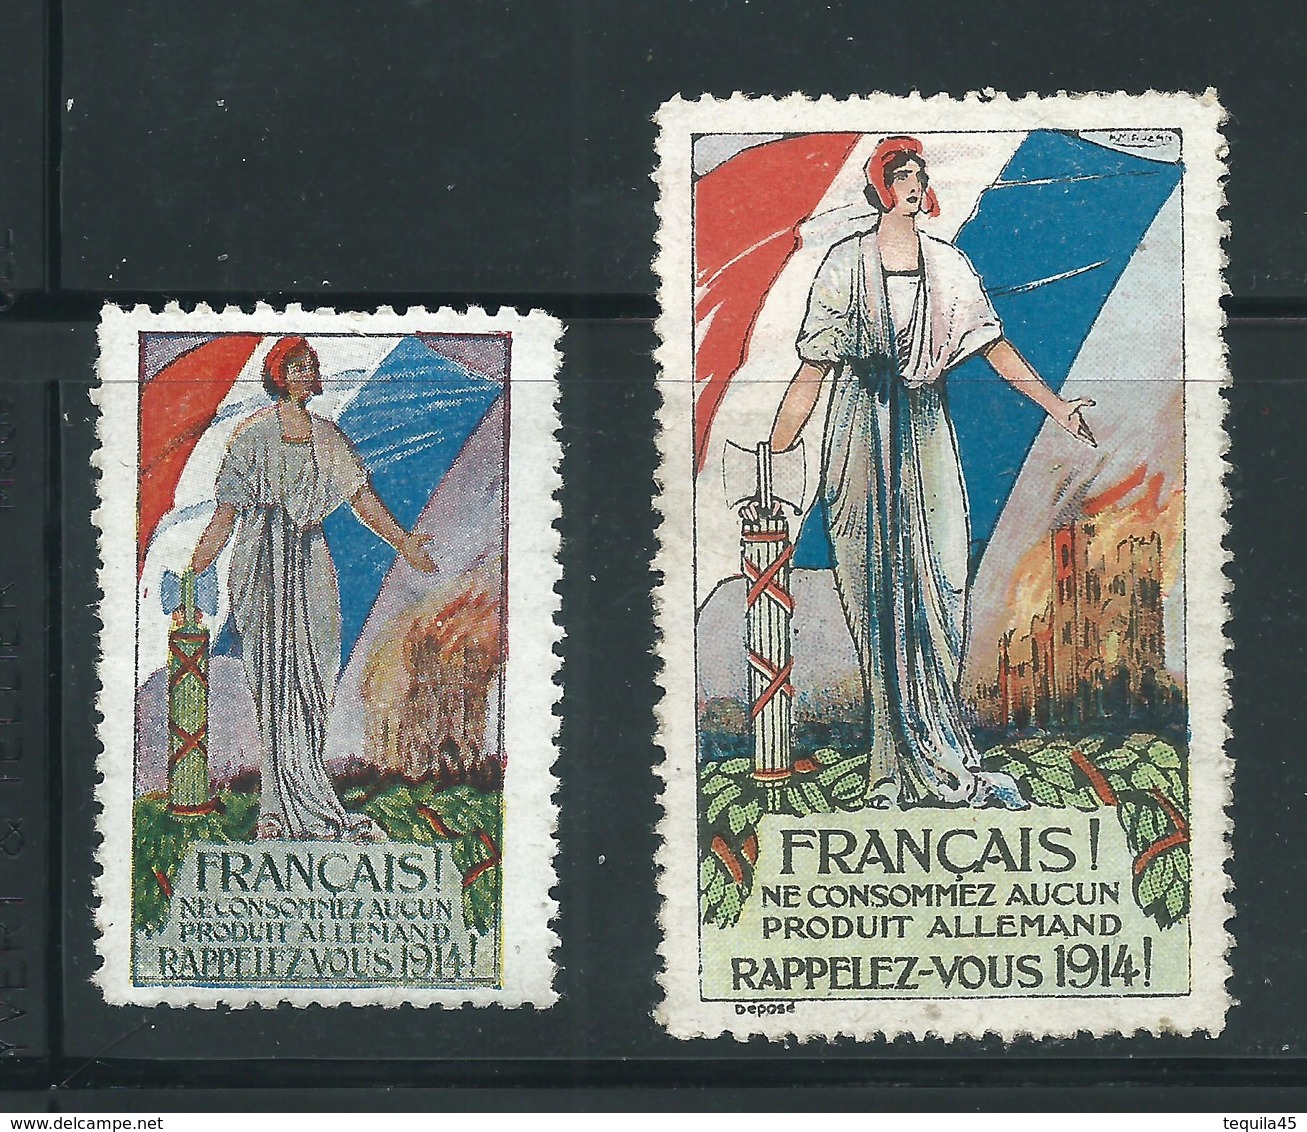 2 VIGNETTES PATRIOTIQUES époque DELANDRE -  Poster Stamp - Cinderellas War - WWI WW1 Cinderella 1914 1918 - Vignettes Militaires